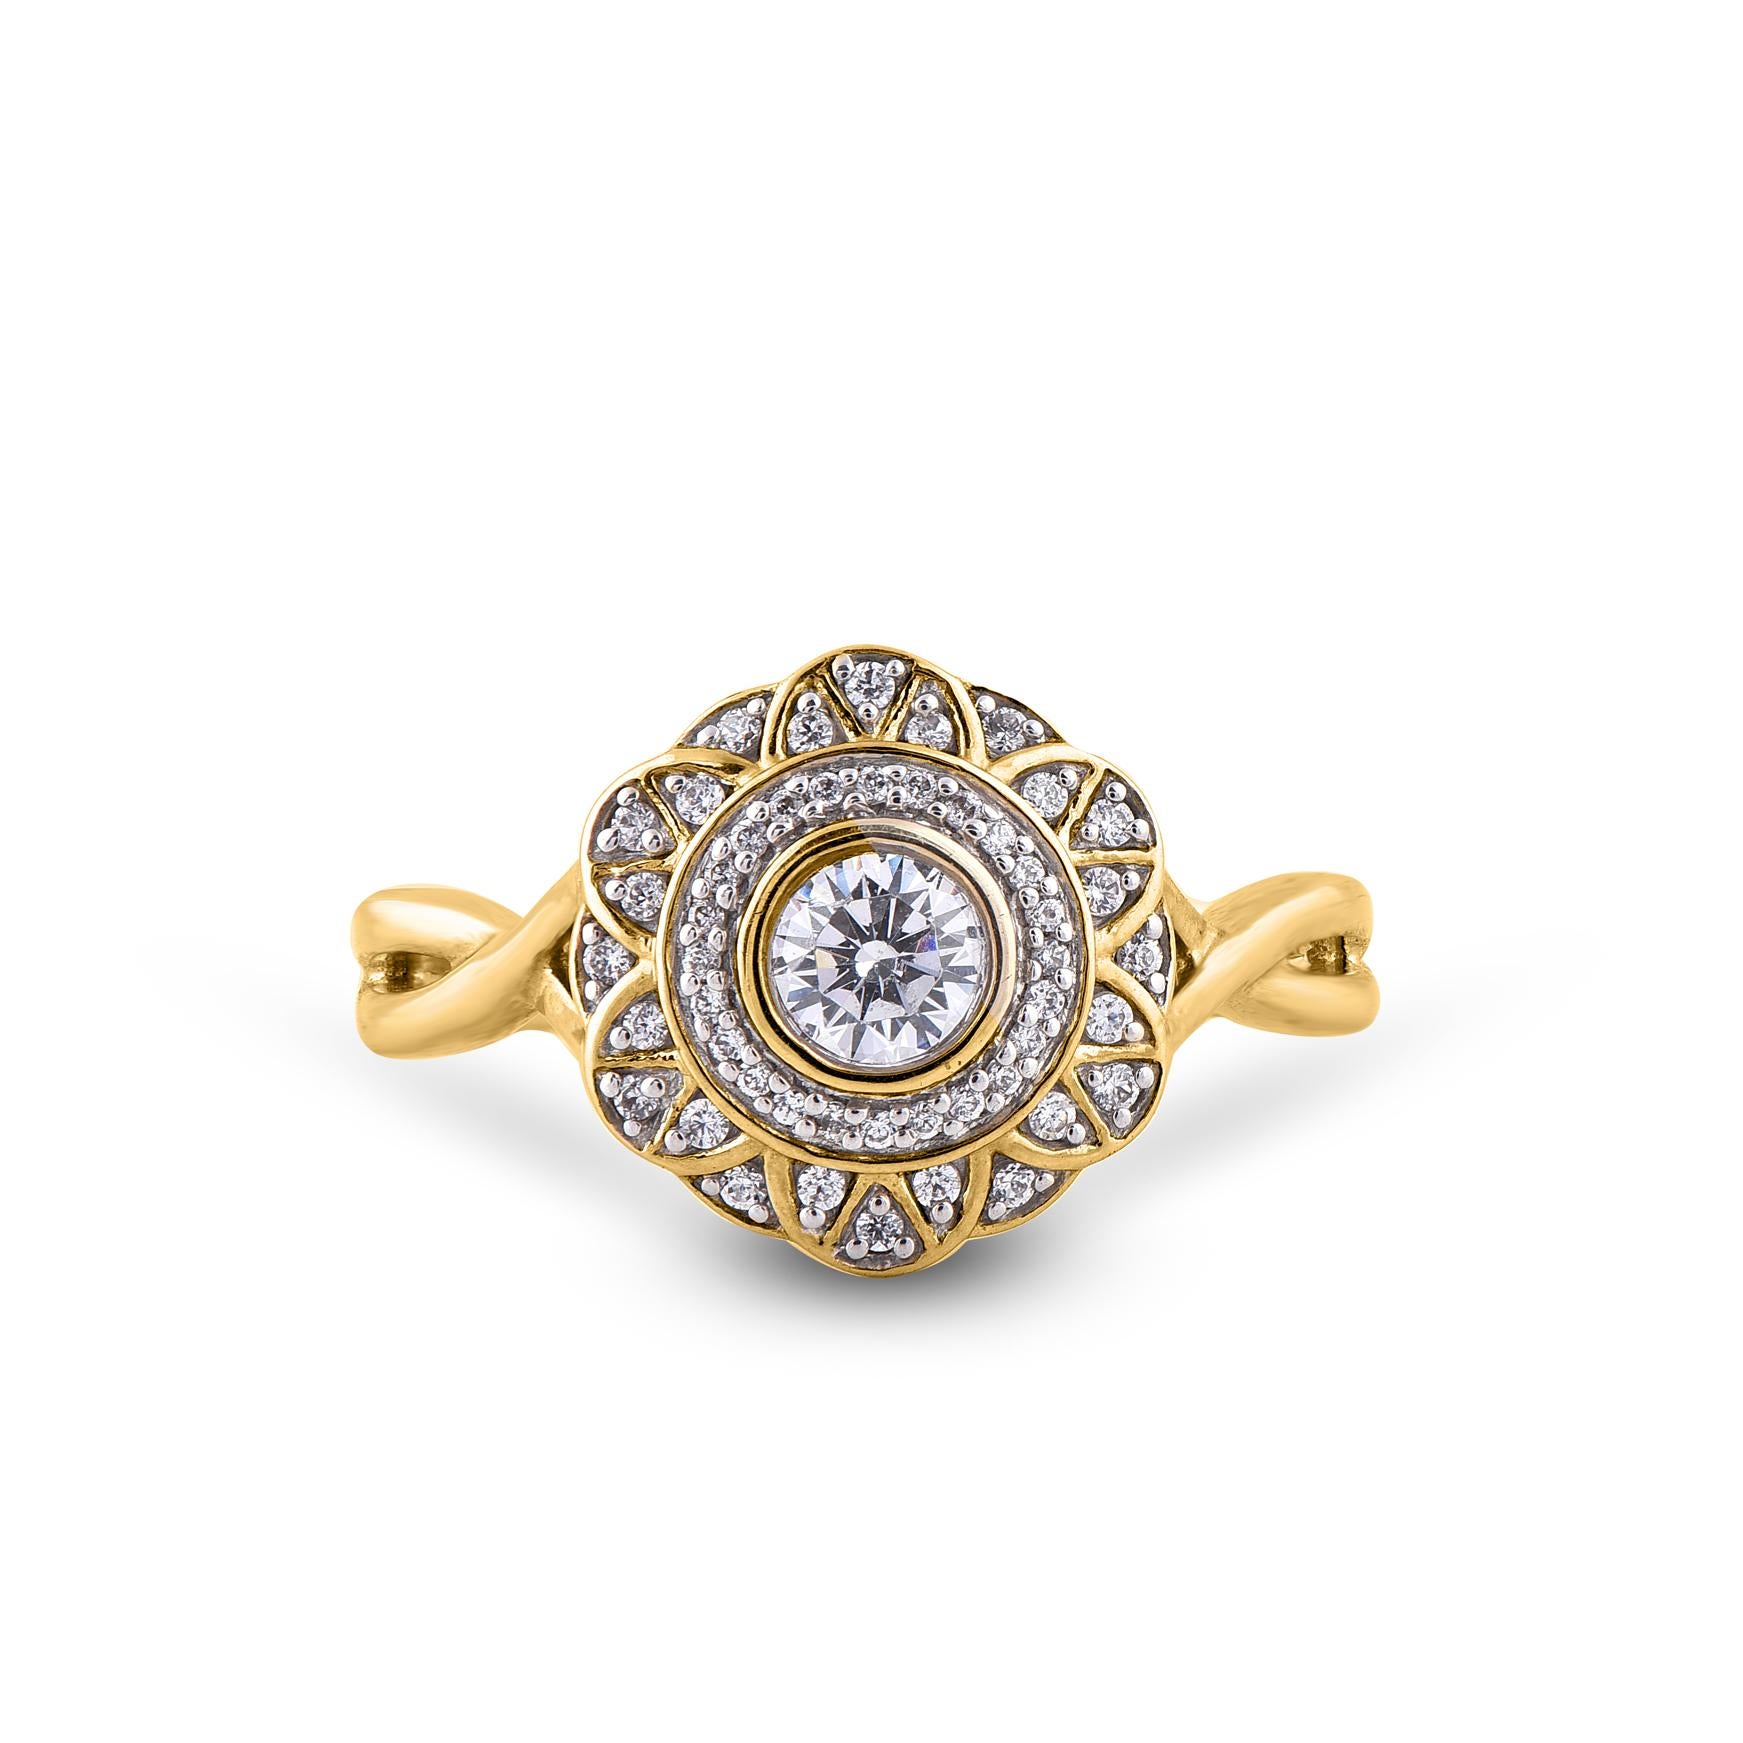 Véritablement exquise, cette bague d'anniversaire en diamant ne manquera pas d'être admirée pour la beauté et l'élégance classiques inhérentes à son design. Cette bague est fabriquée en or jaune 14 carats et est sertie de 49 diamants naturels de